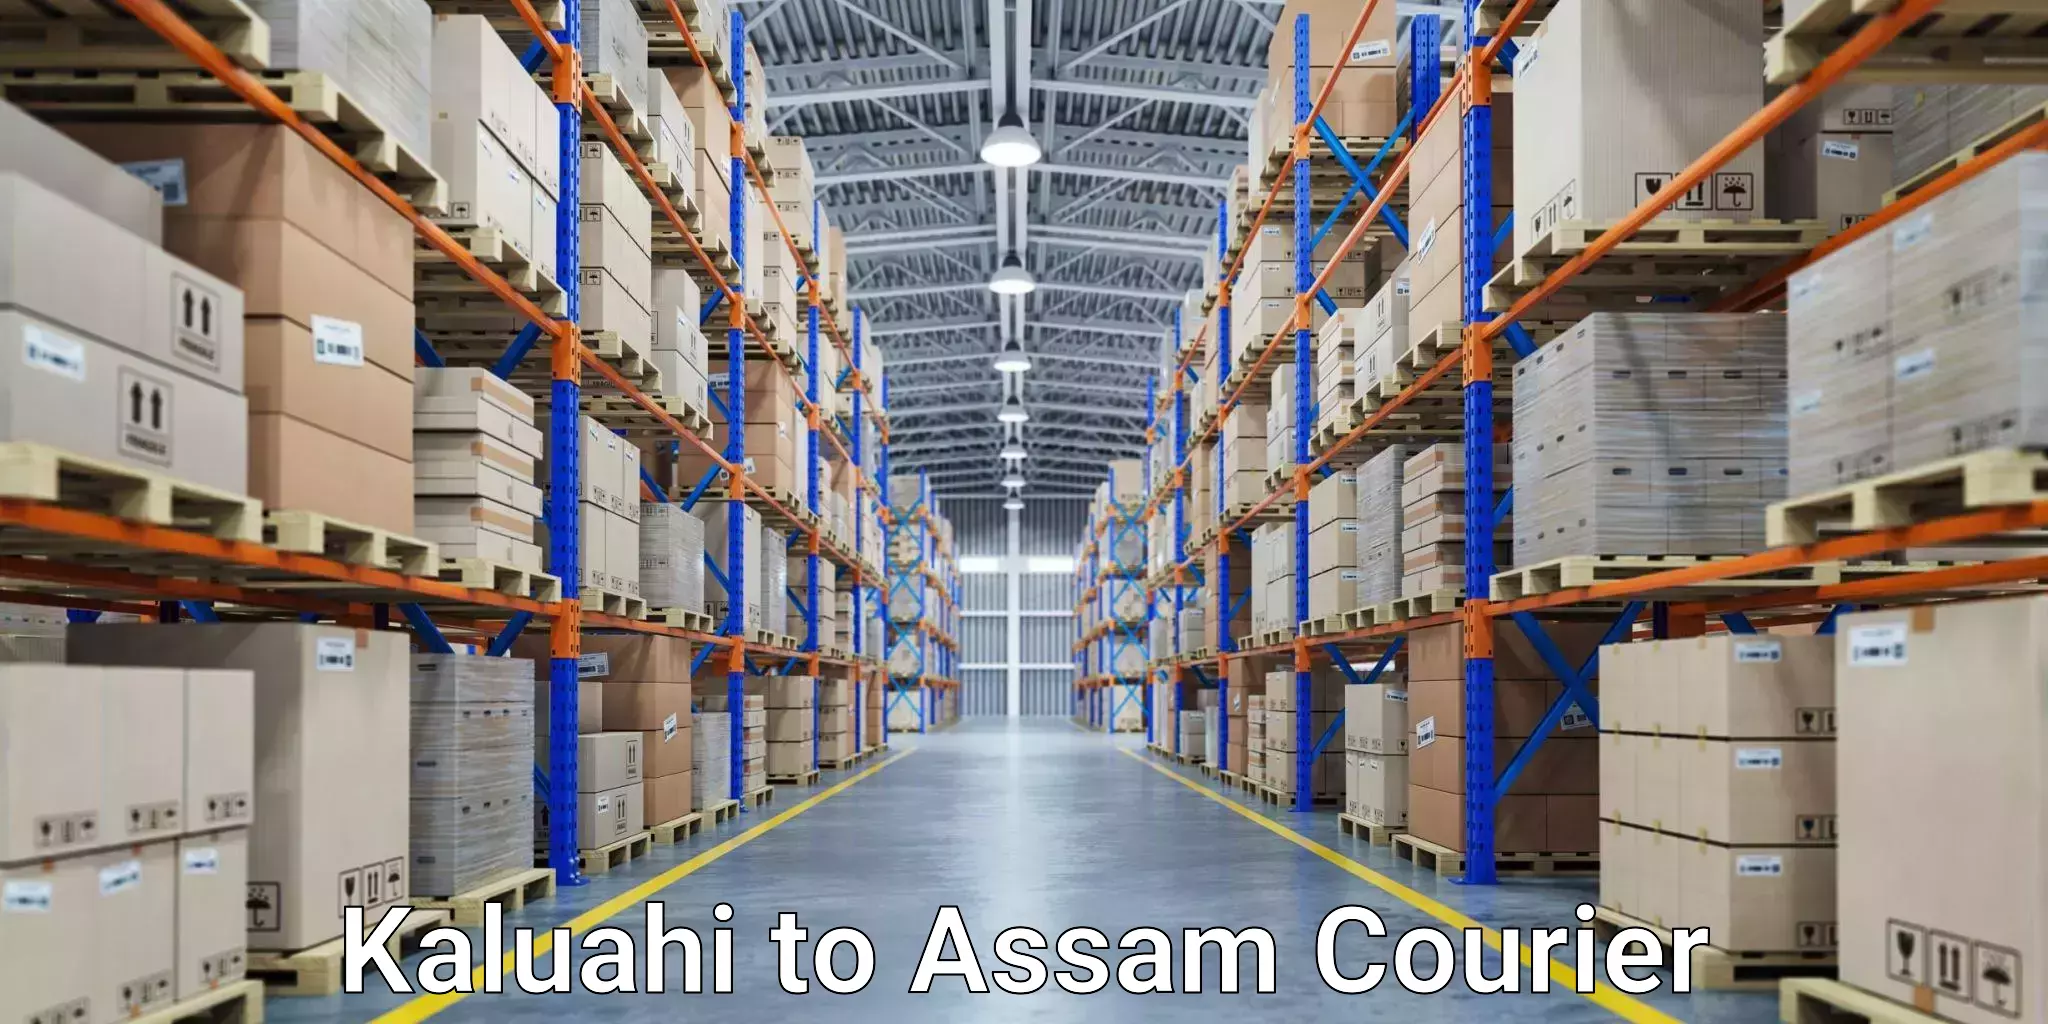 Local courier options Kaluahi to Assam